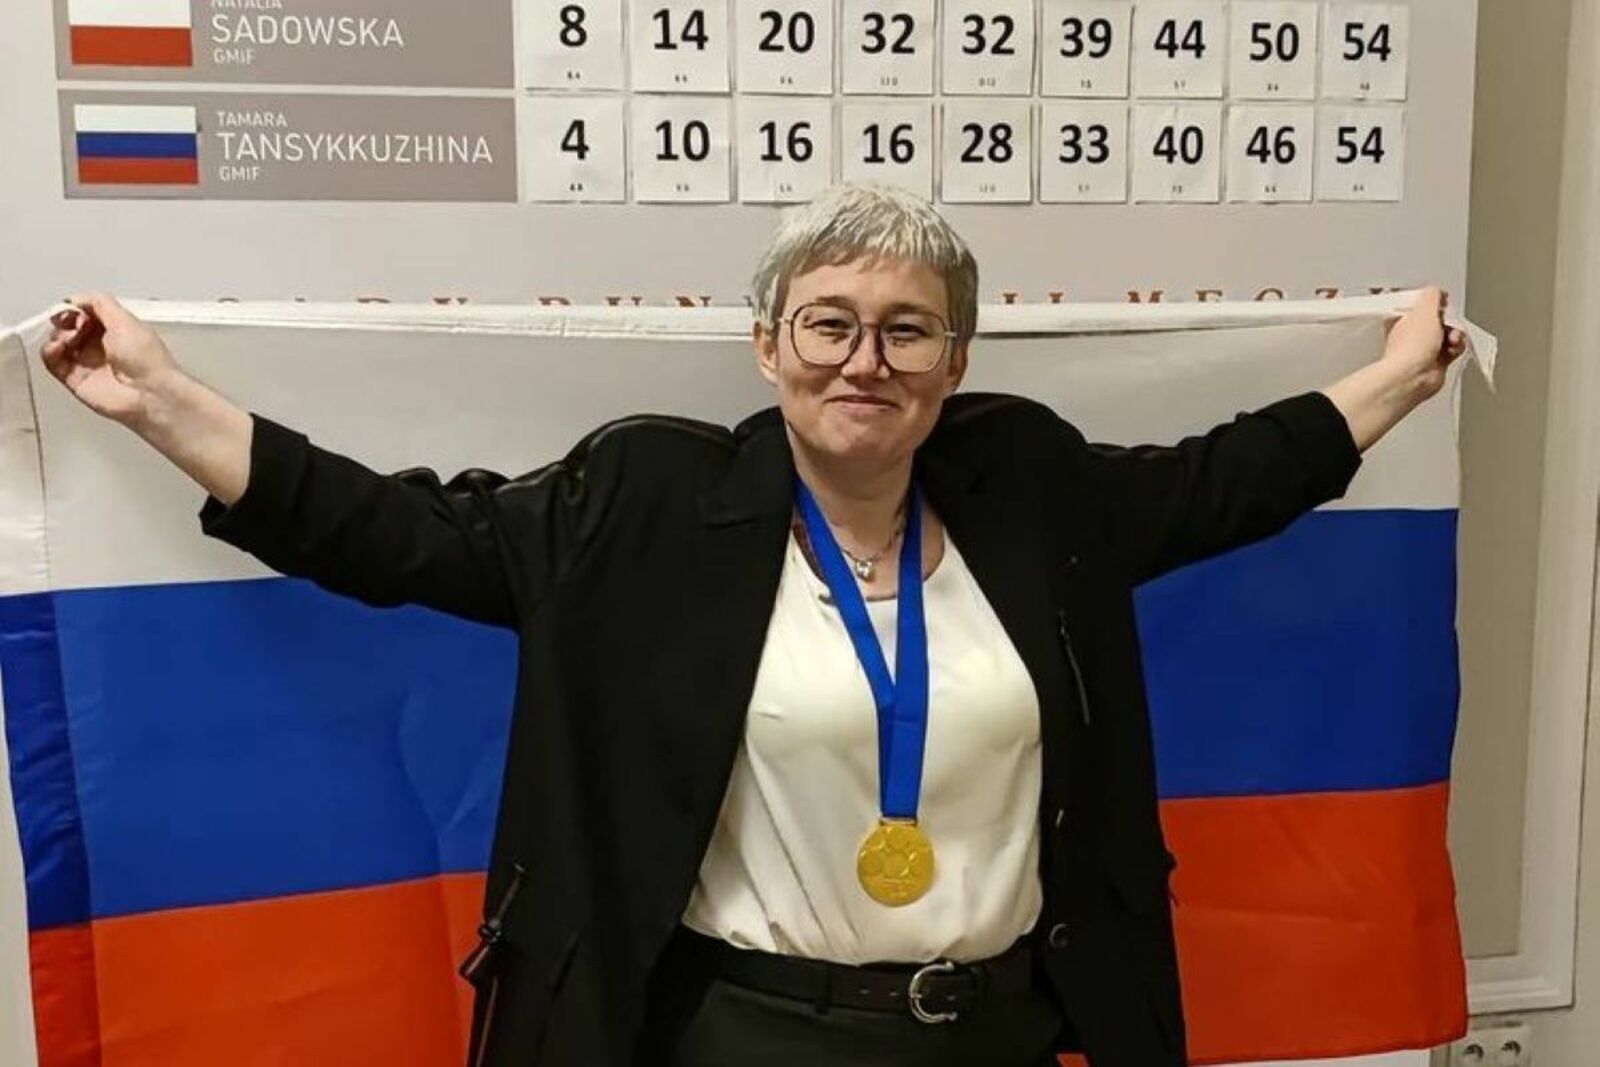 Семикратную чемпионку мира Тамару Тансыккужину исключили из рейтинга Всемирной федерации шашек